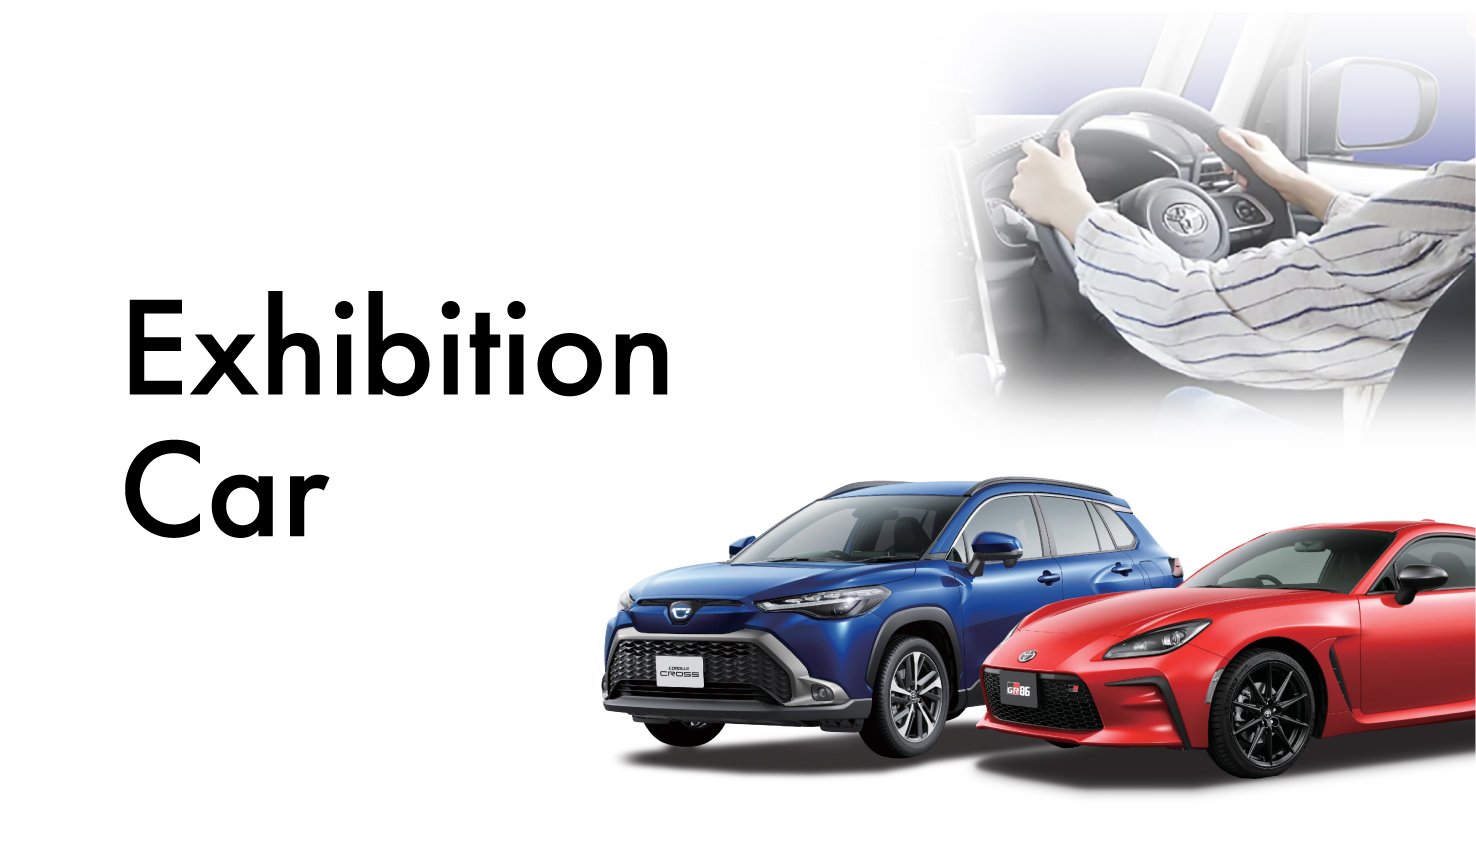 Exhibition Car